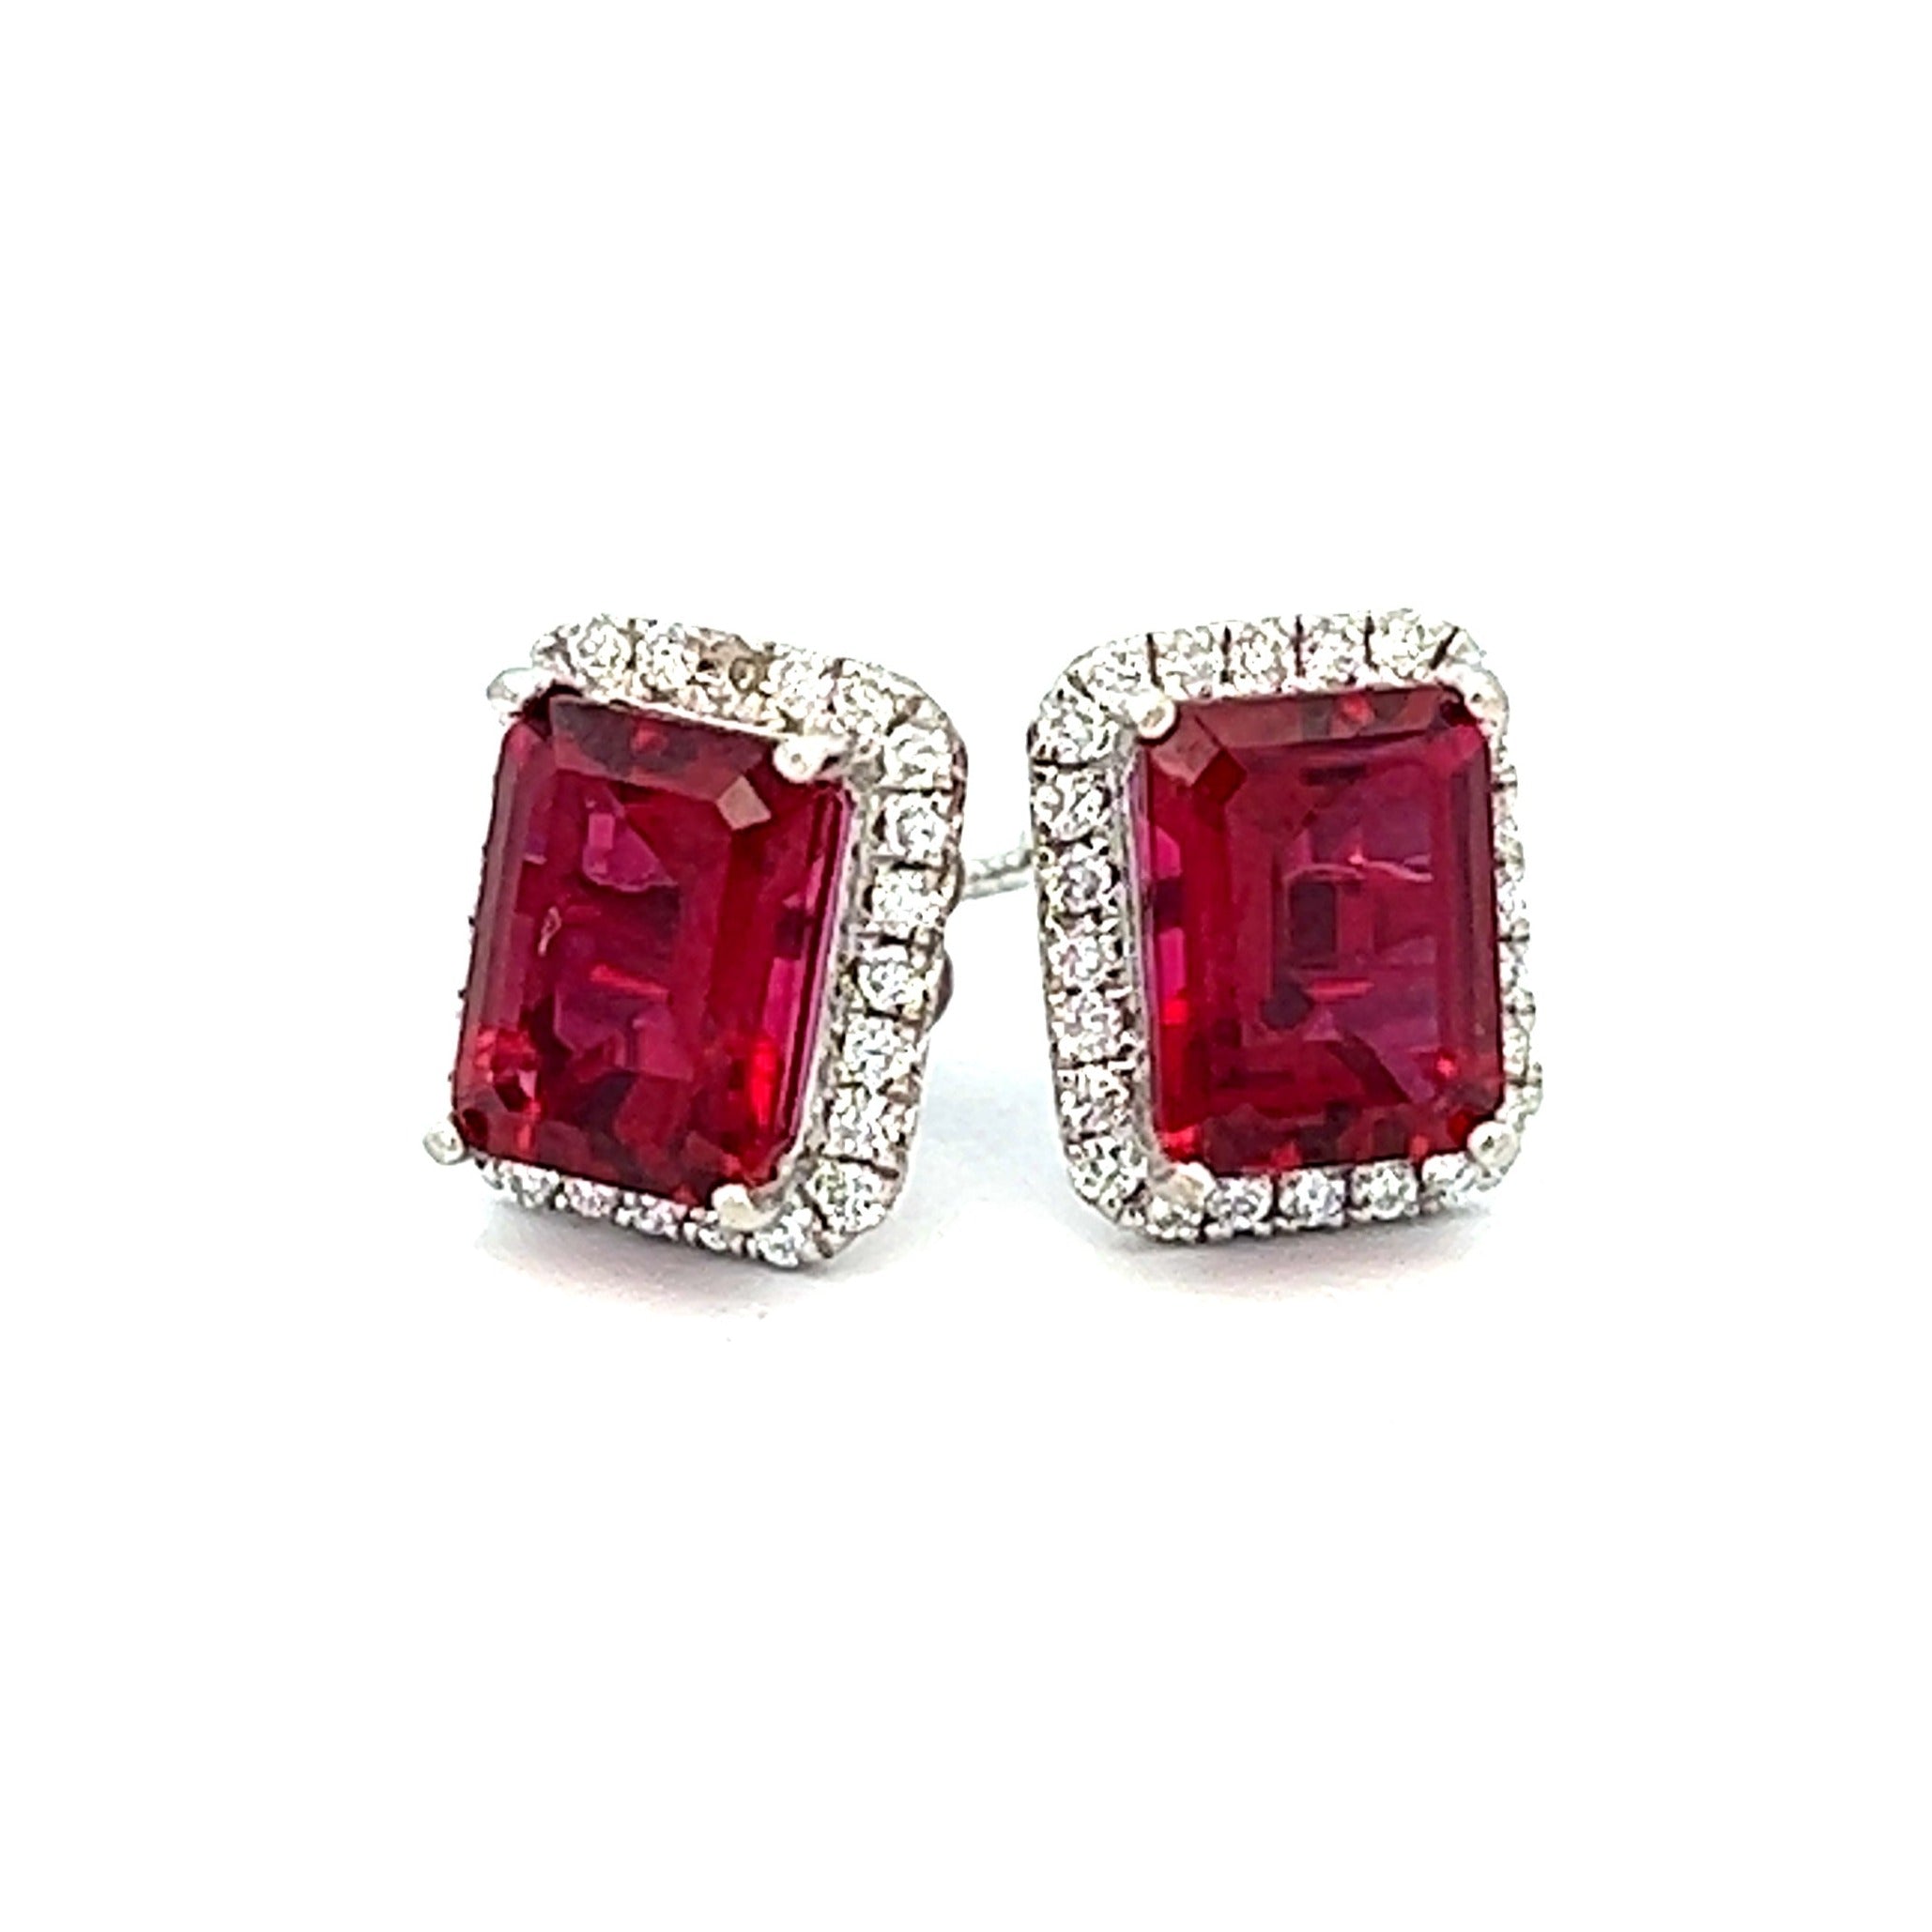 Buy Genuine Ruby earrings, Ruby dangle silver earrings online at  aStudio1980.com